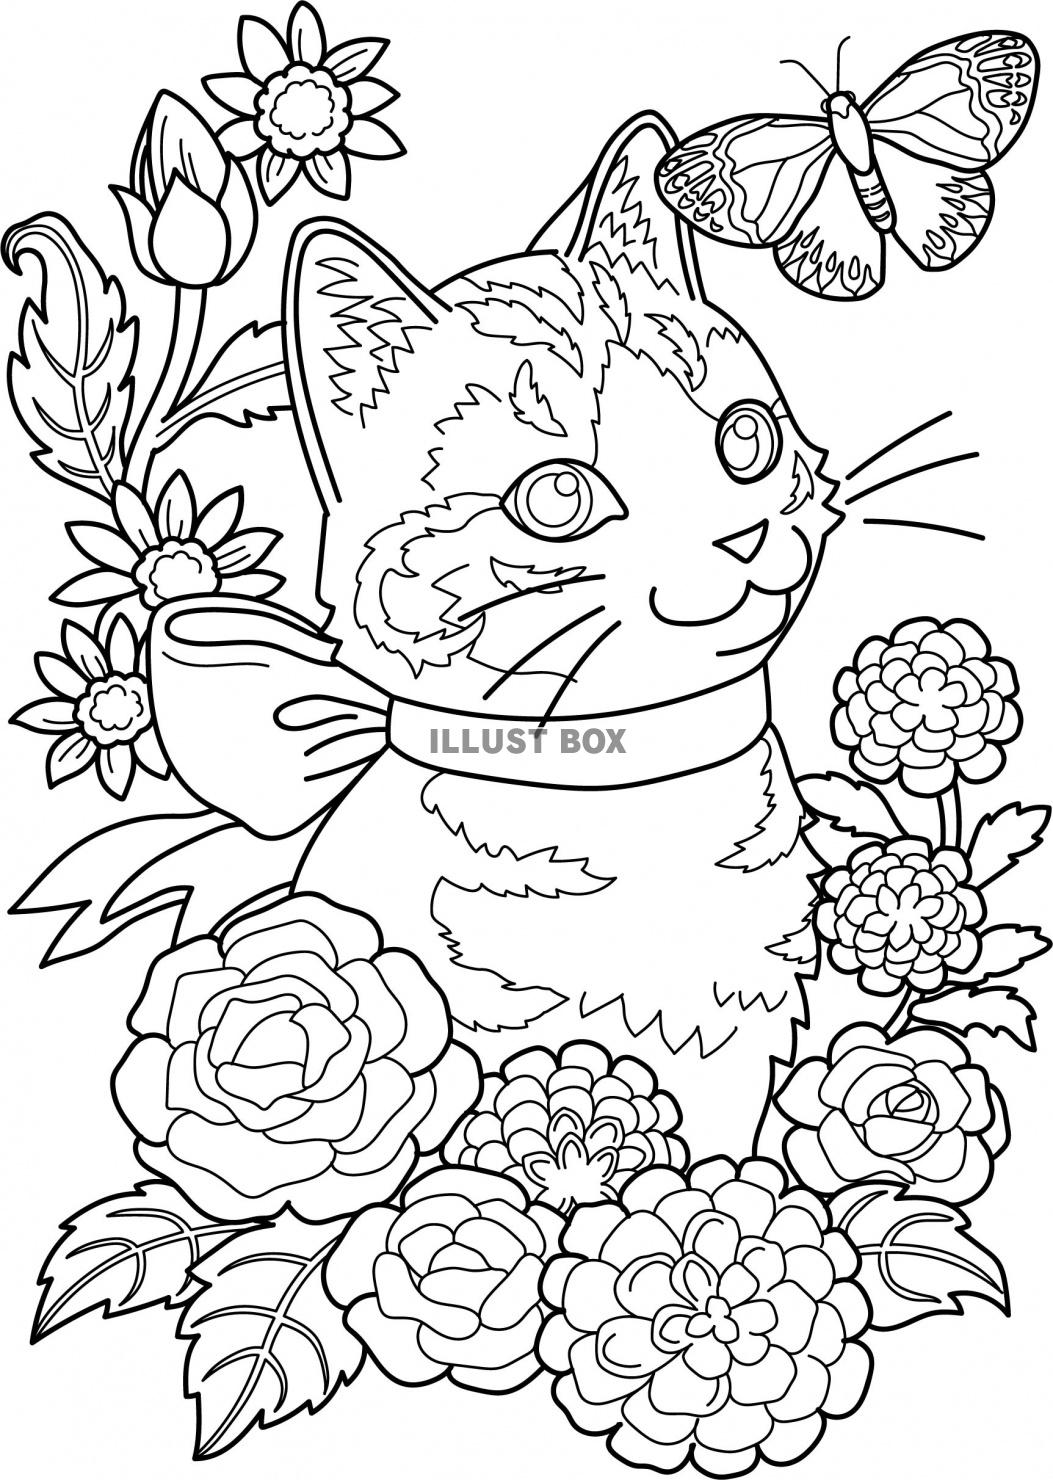 無料イラスト 猫と花と蝶の塗り絵